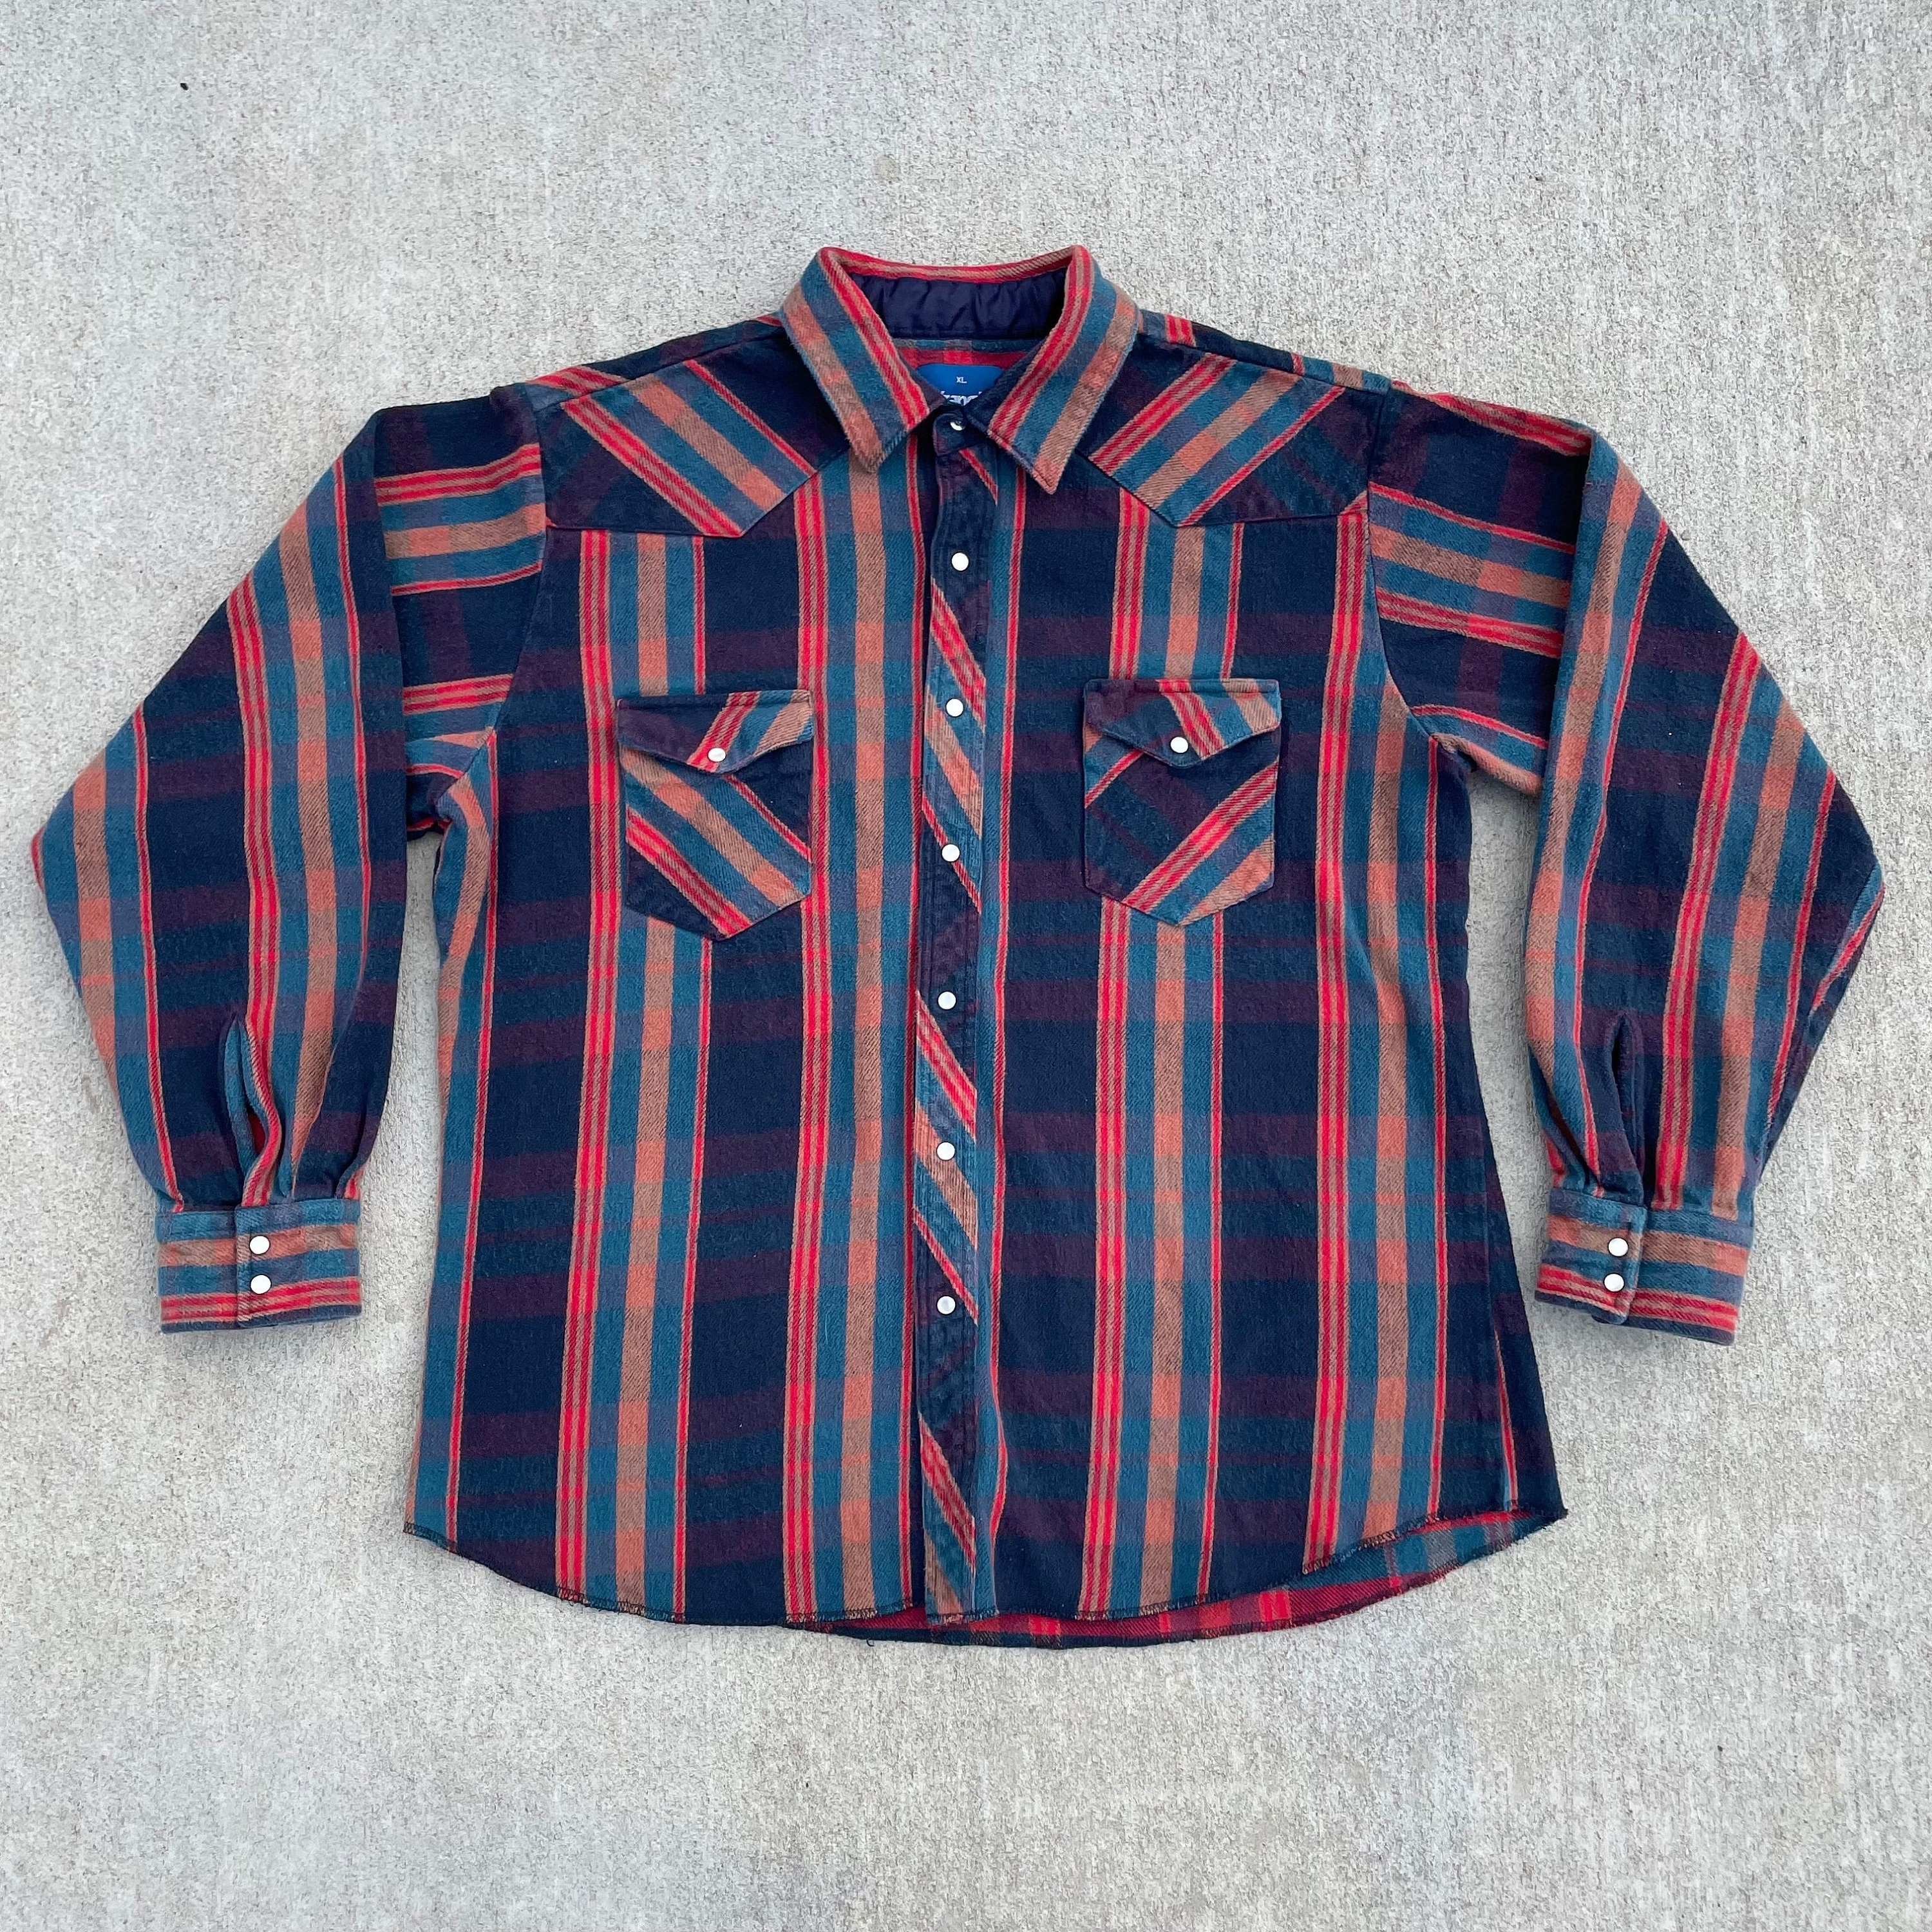 90s Wrangler Striped Shirt - Etsy